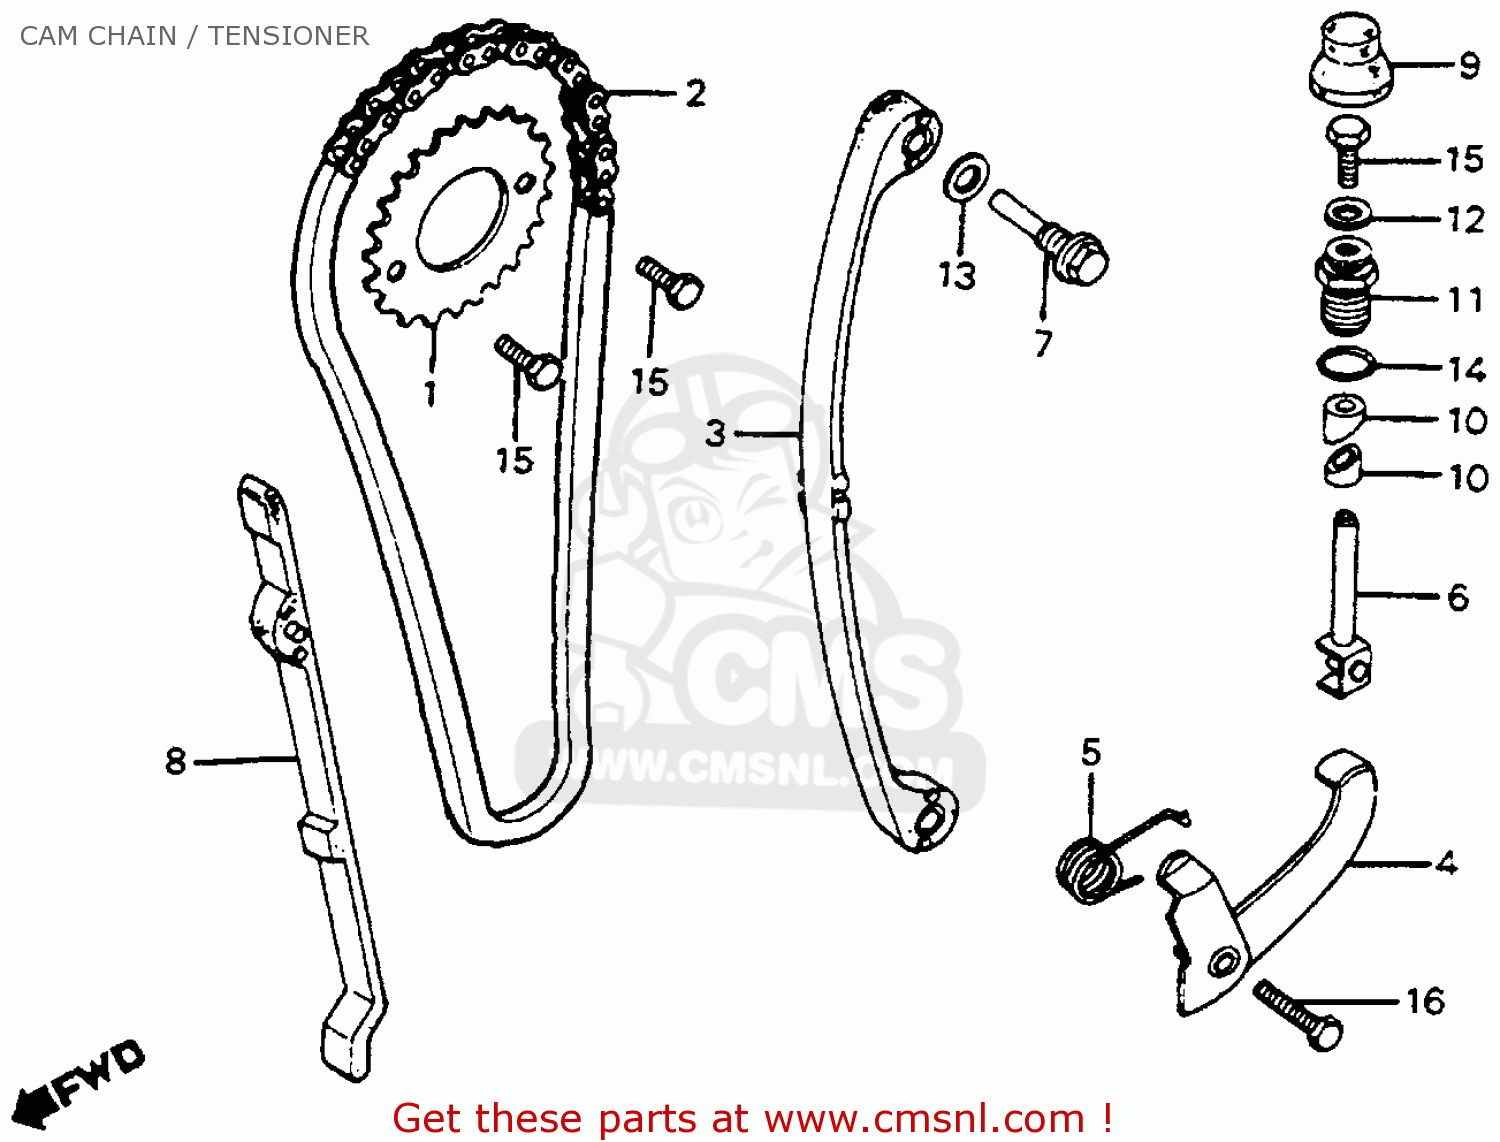 Honda xr200 repair manual free download #4